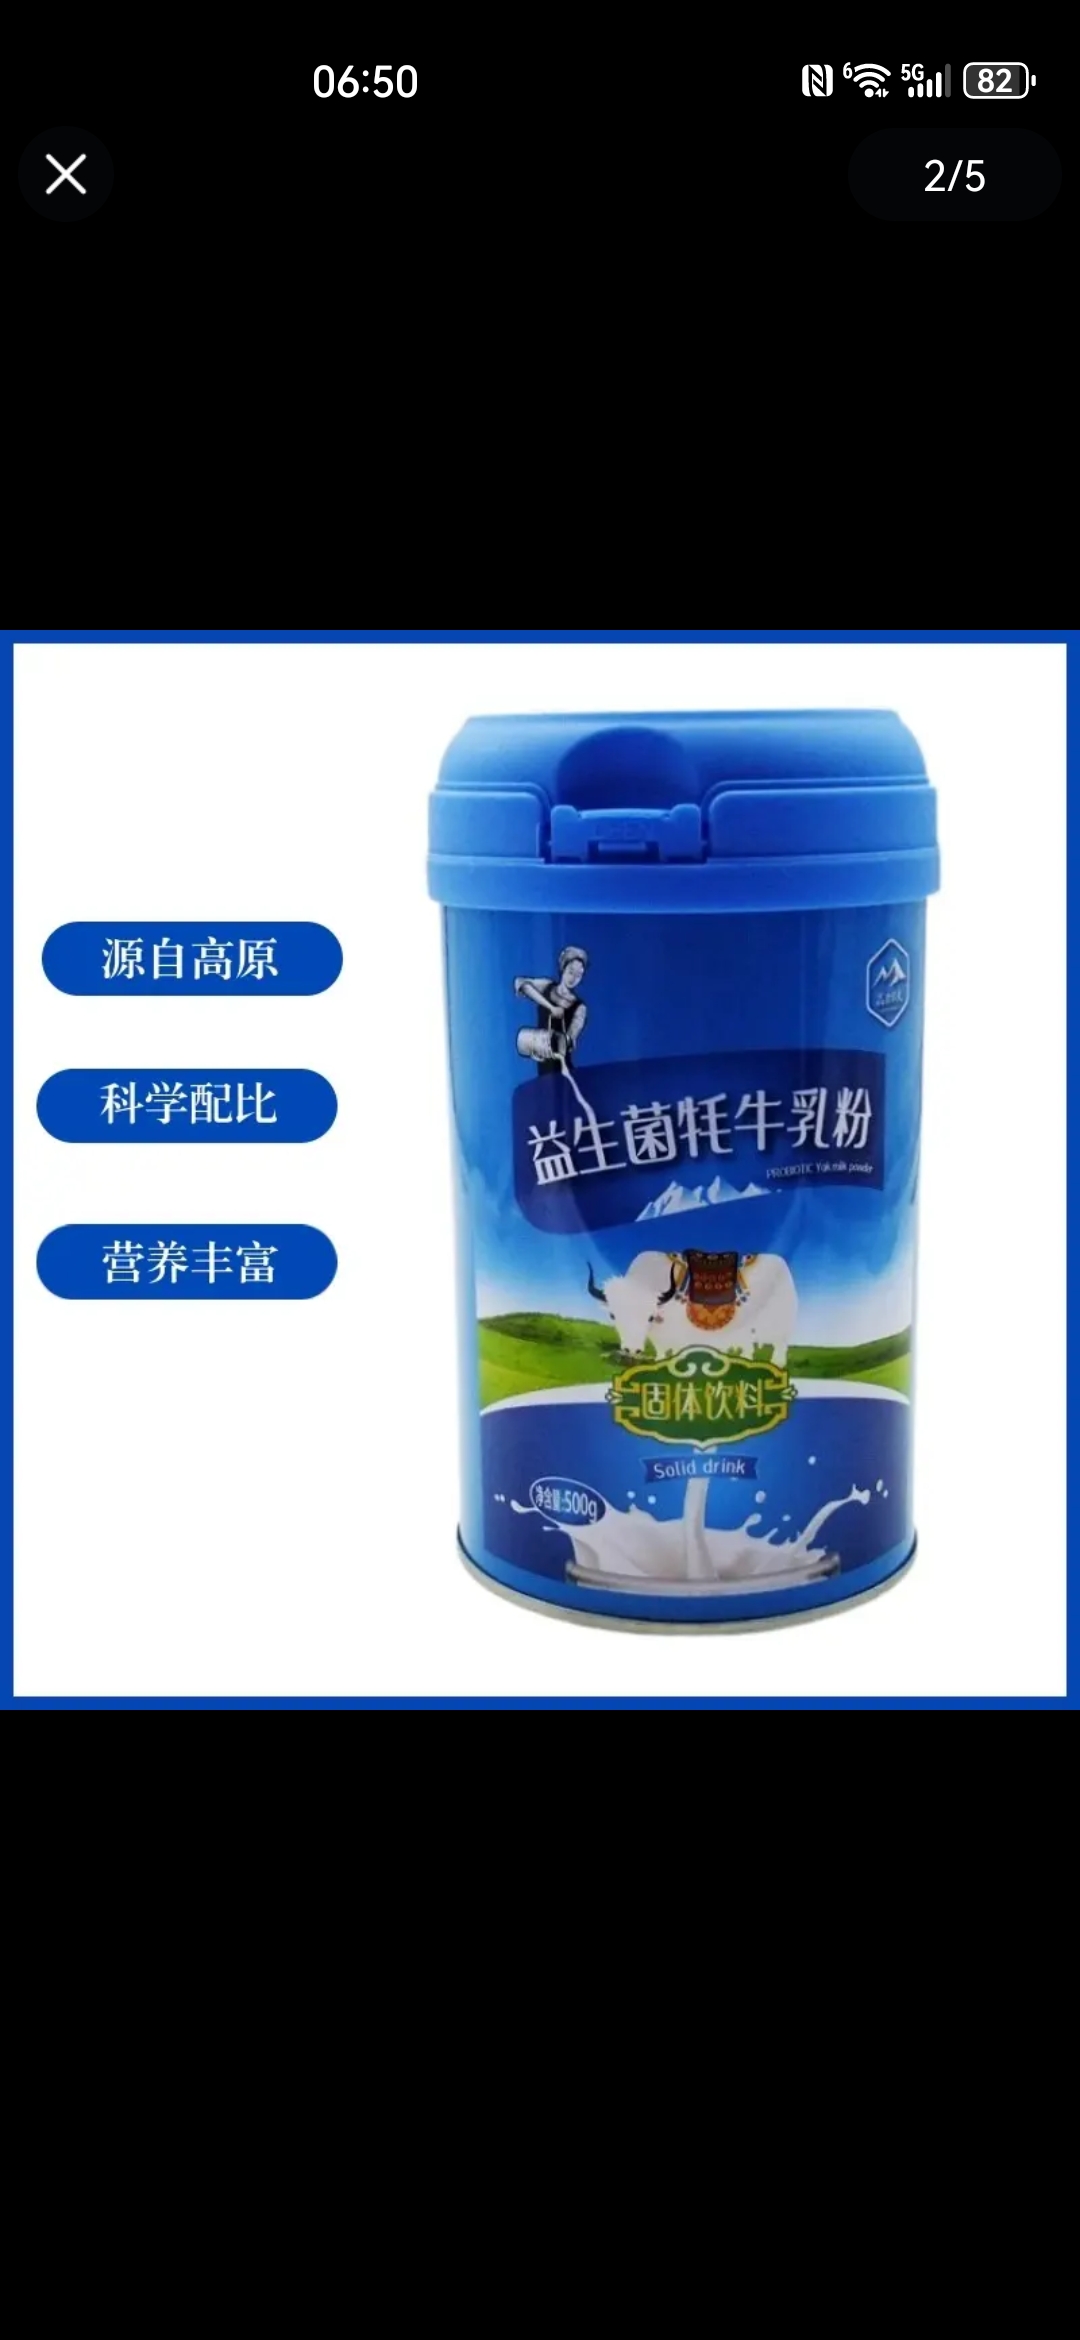 高原农夫益生菌牦牛奶粉 青藏高原特产500g罐装包邮